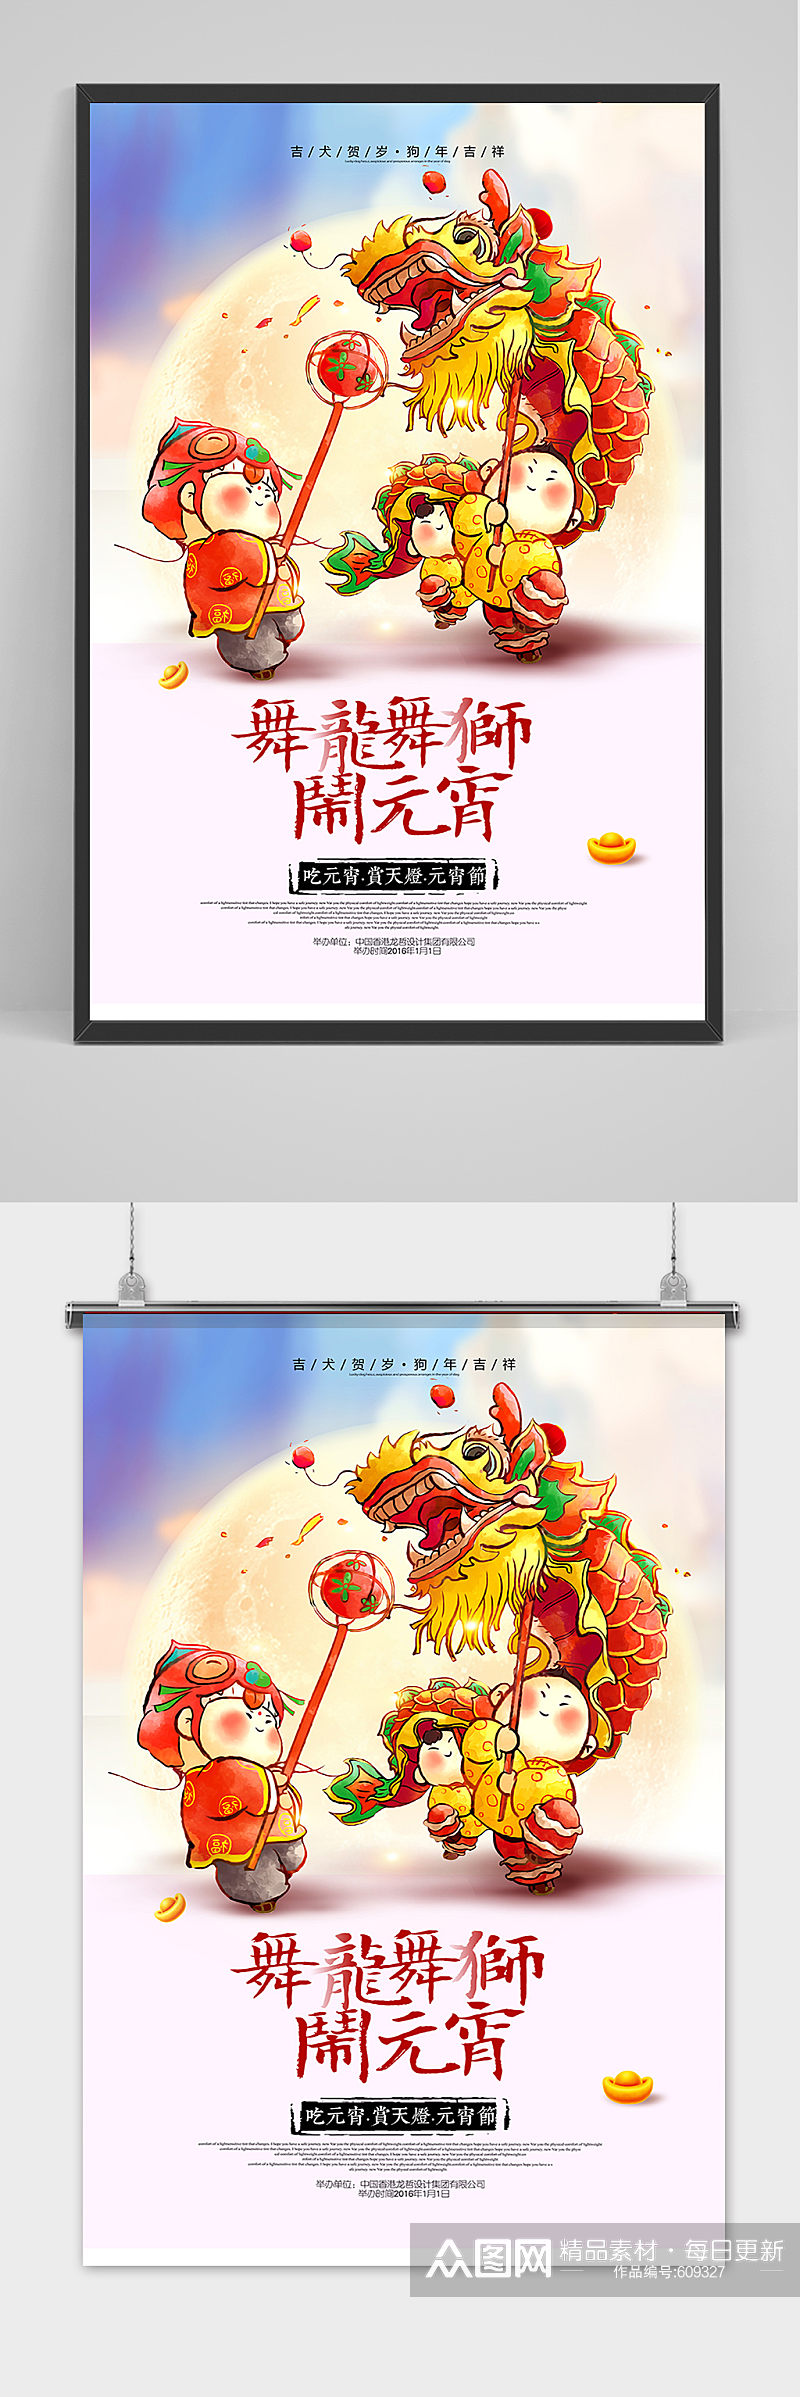 中国风舞龙舞狮闹元宵海报设计素材